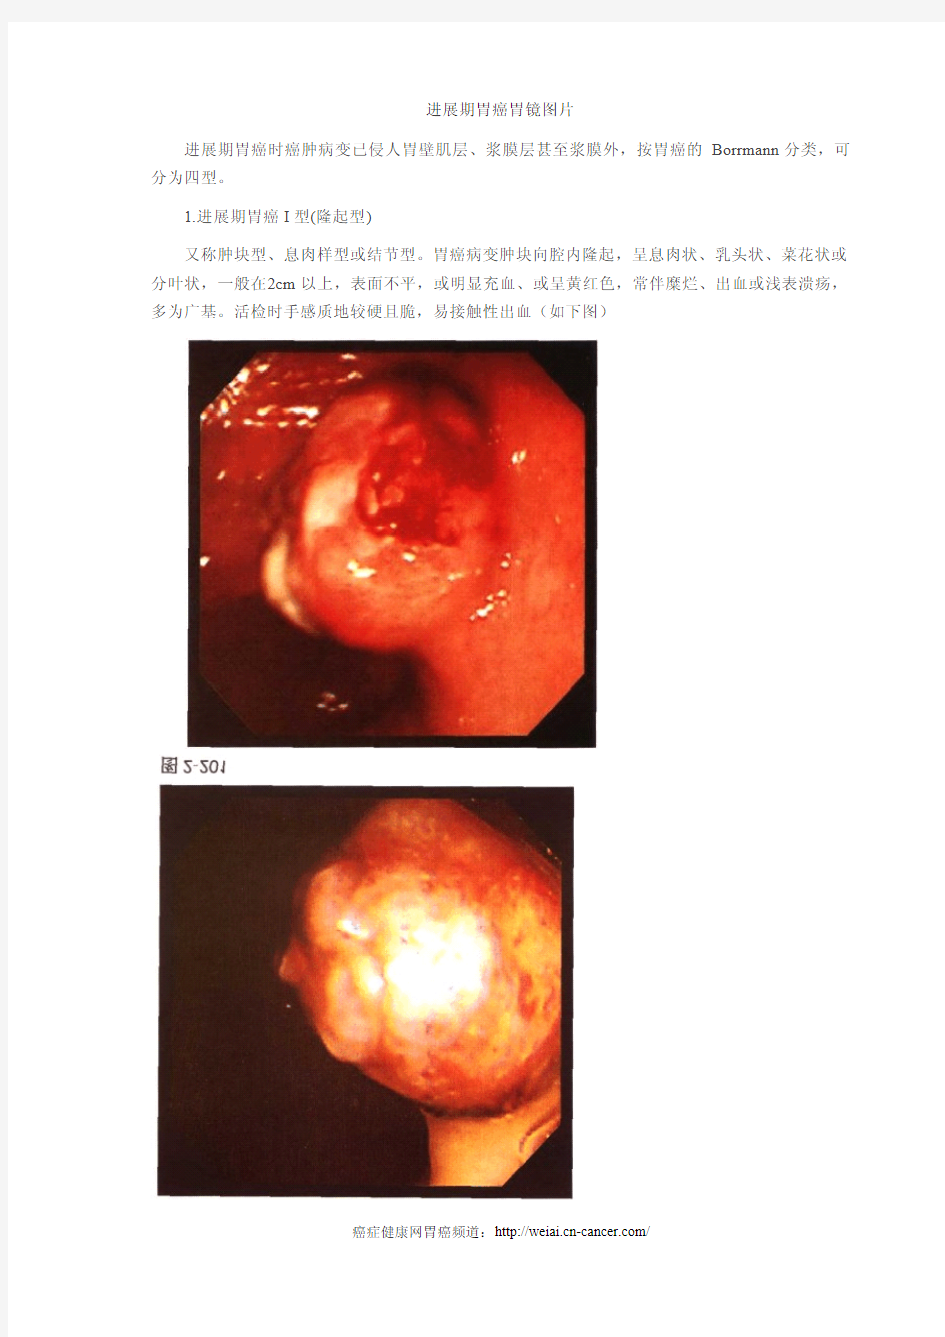 进展期胃癌胃镜图片